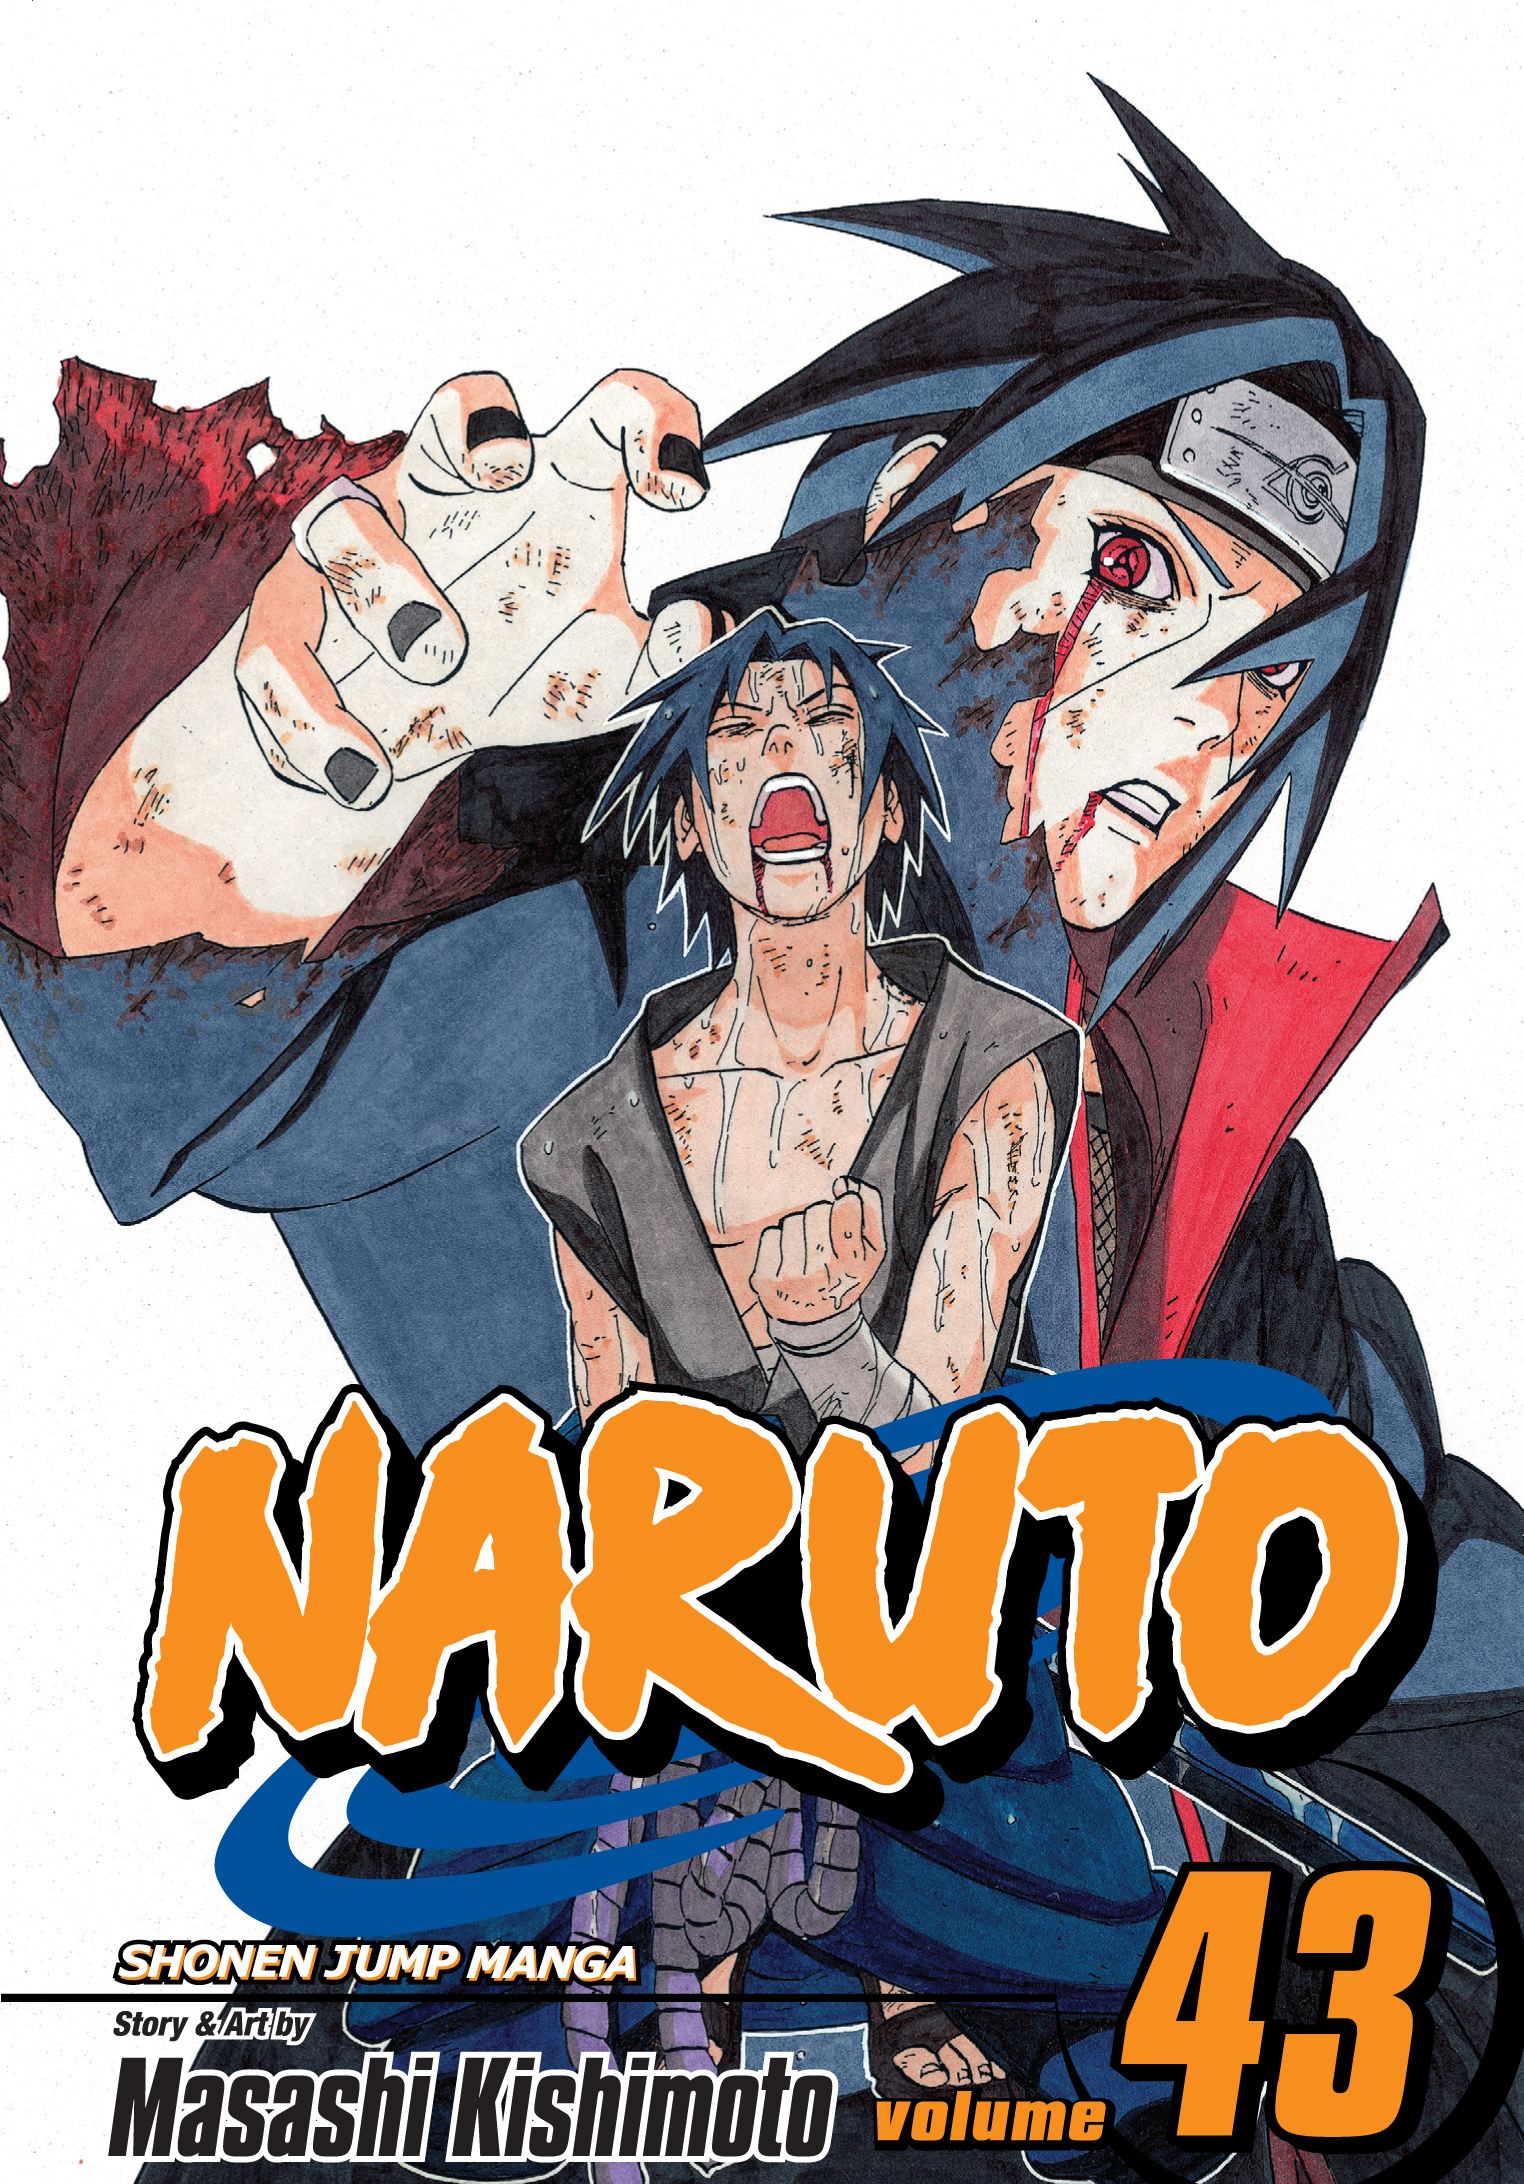 Naruto Vol. 43 | Kishimoto, Masashi (Auteur)